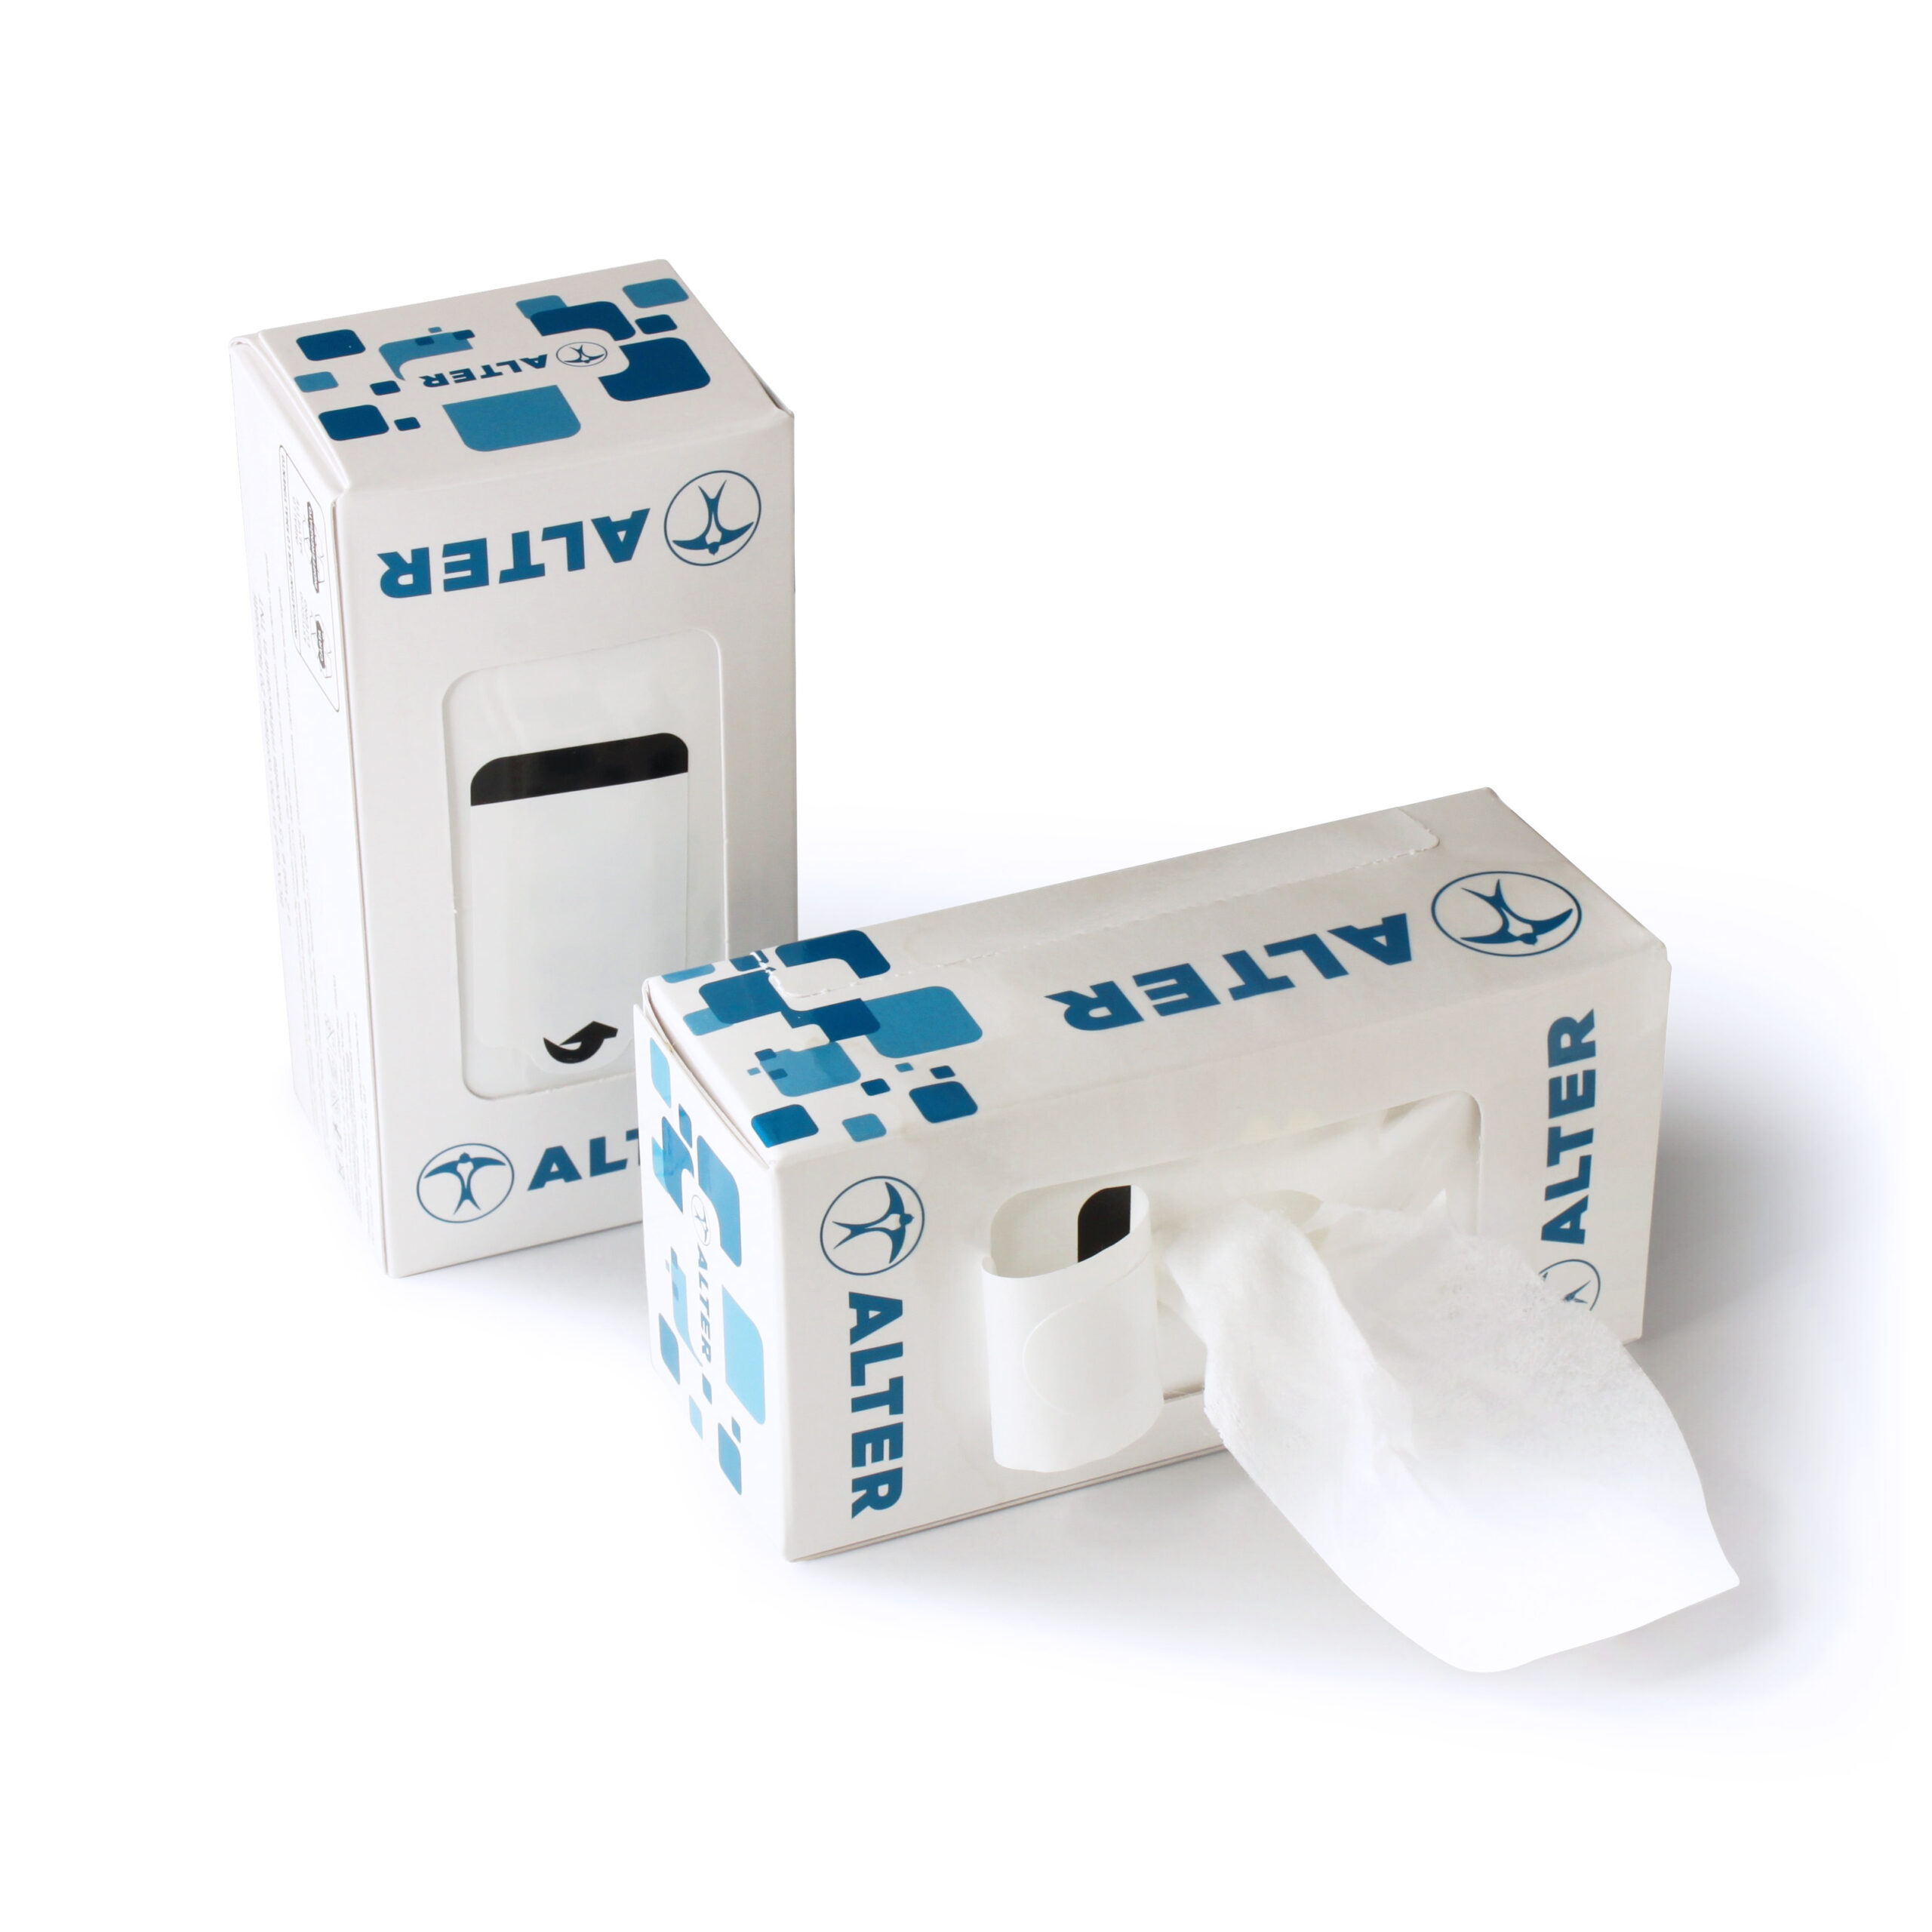 Fazzoletti di carta e salviettine in box mini con logo aziendale